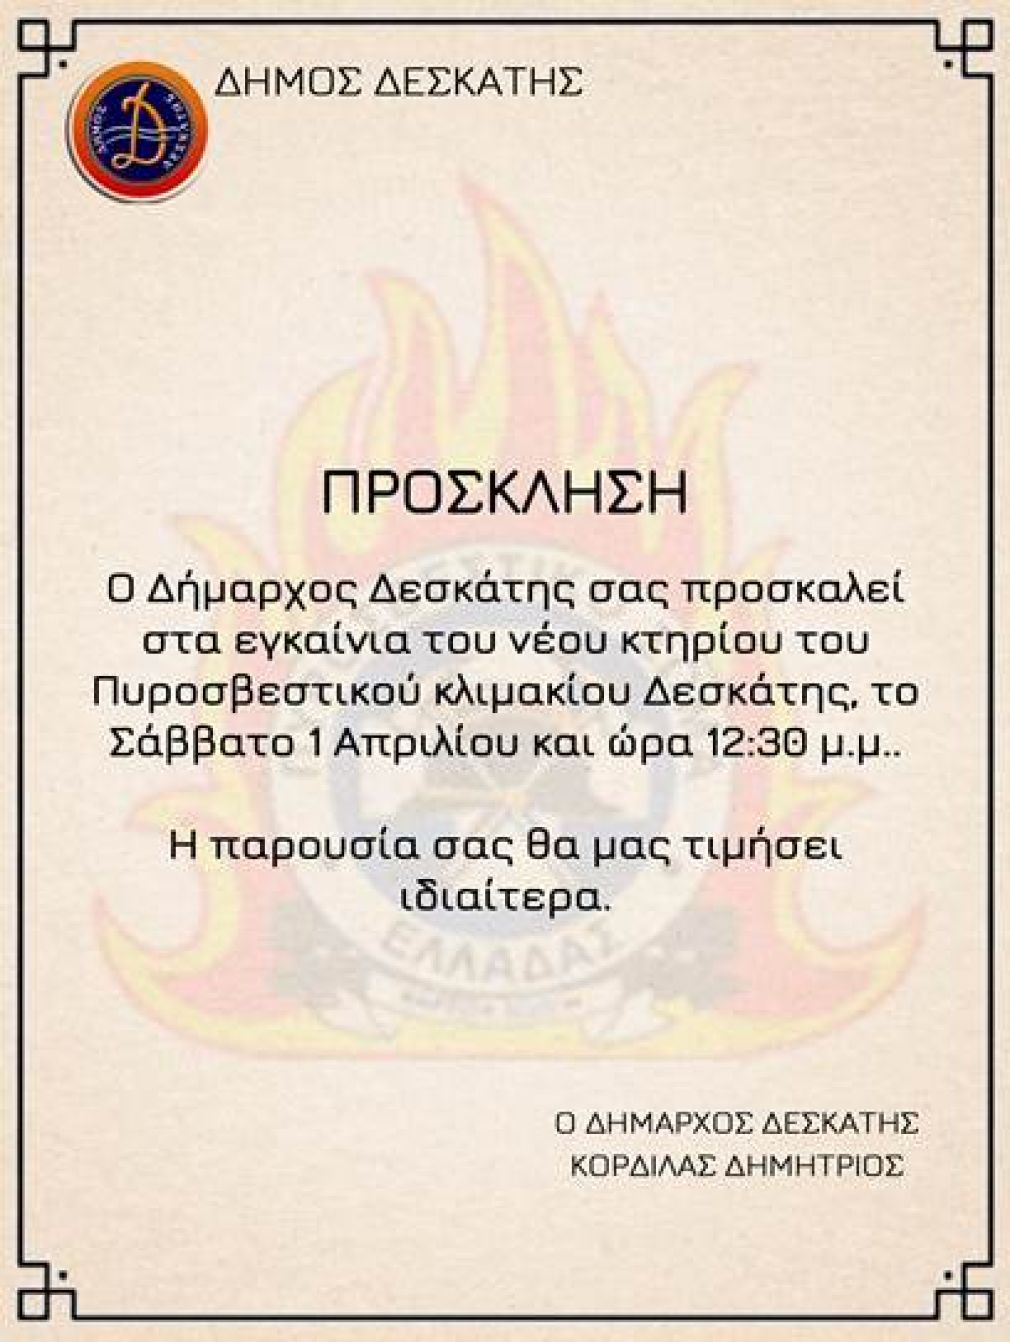 Το Σάββατο 1-04-2023 και ώρα 12:30 μ.μ. θα πραγματοποιηθούν τα εγκαίνια του  νέου κτηρίου του Πυροσβεστικού Κλιμακίου Δεσκάτης, παρουσία του Αρχηγού του Πυροσβεστικού Σώματος Ελλάδος